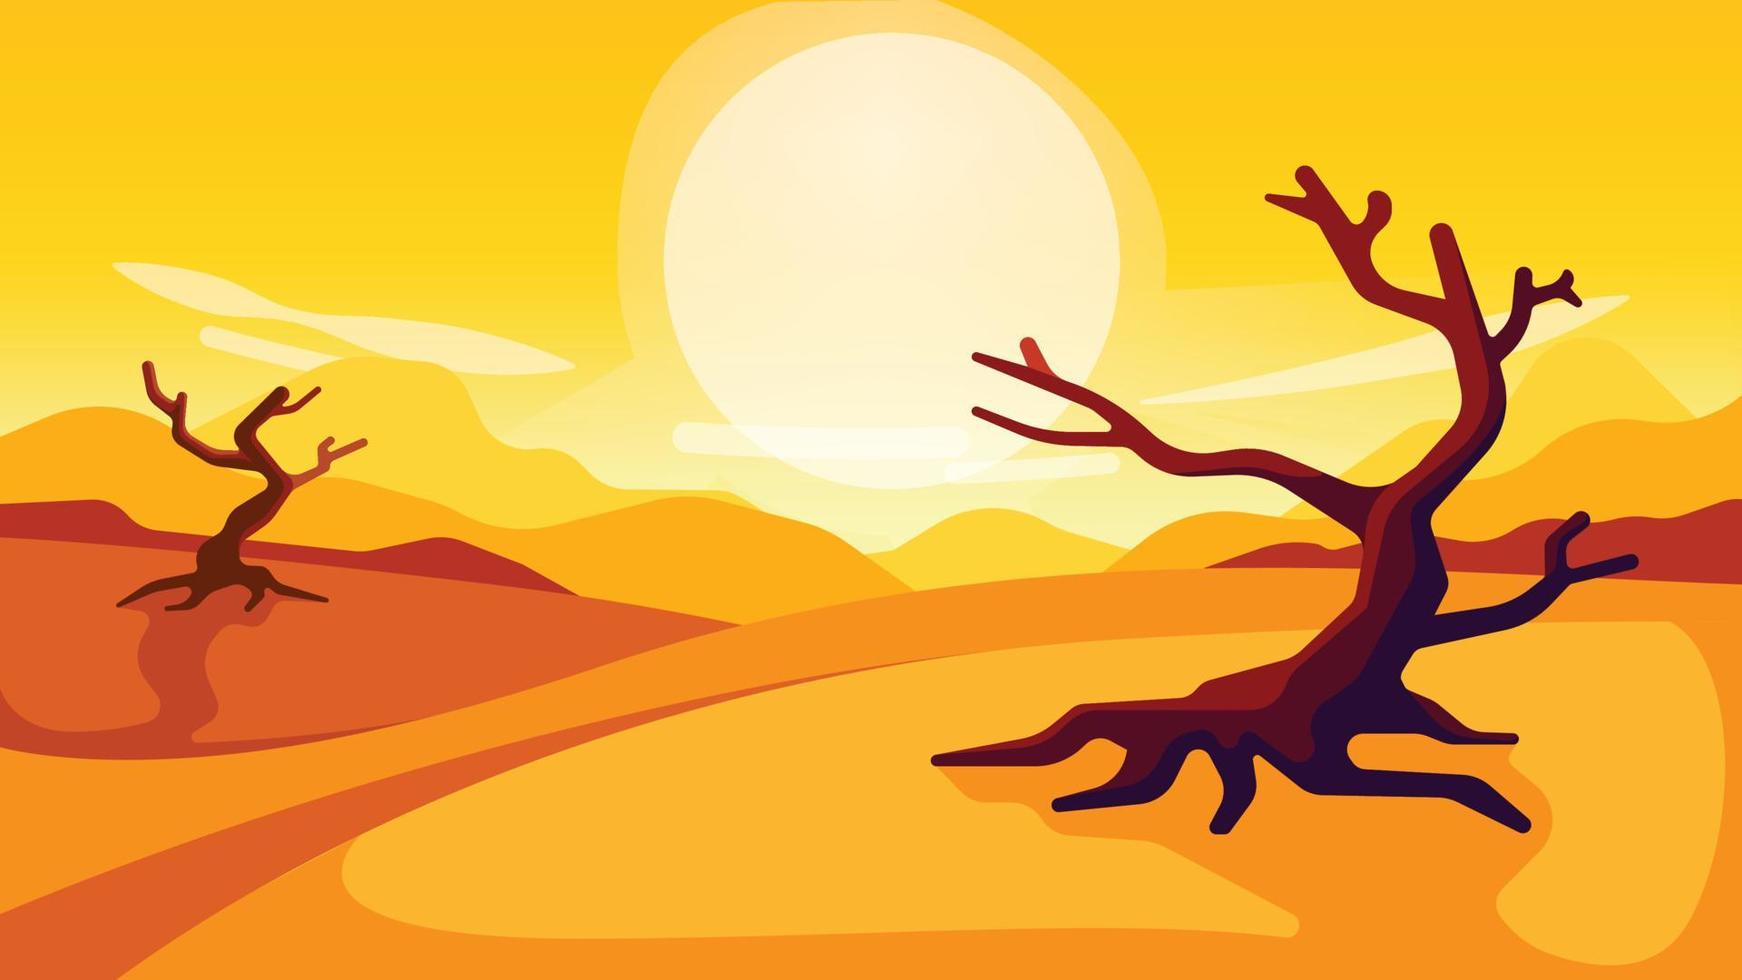 öken- se med torr träd och solig himmel. soluppgång eller solnedgång. stiliserade vektor illustration av en öken- landskap med död- träd.